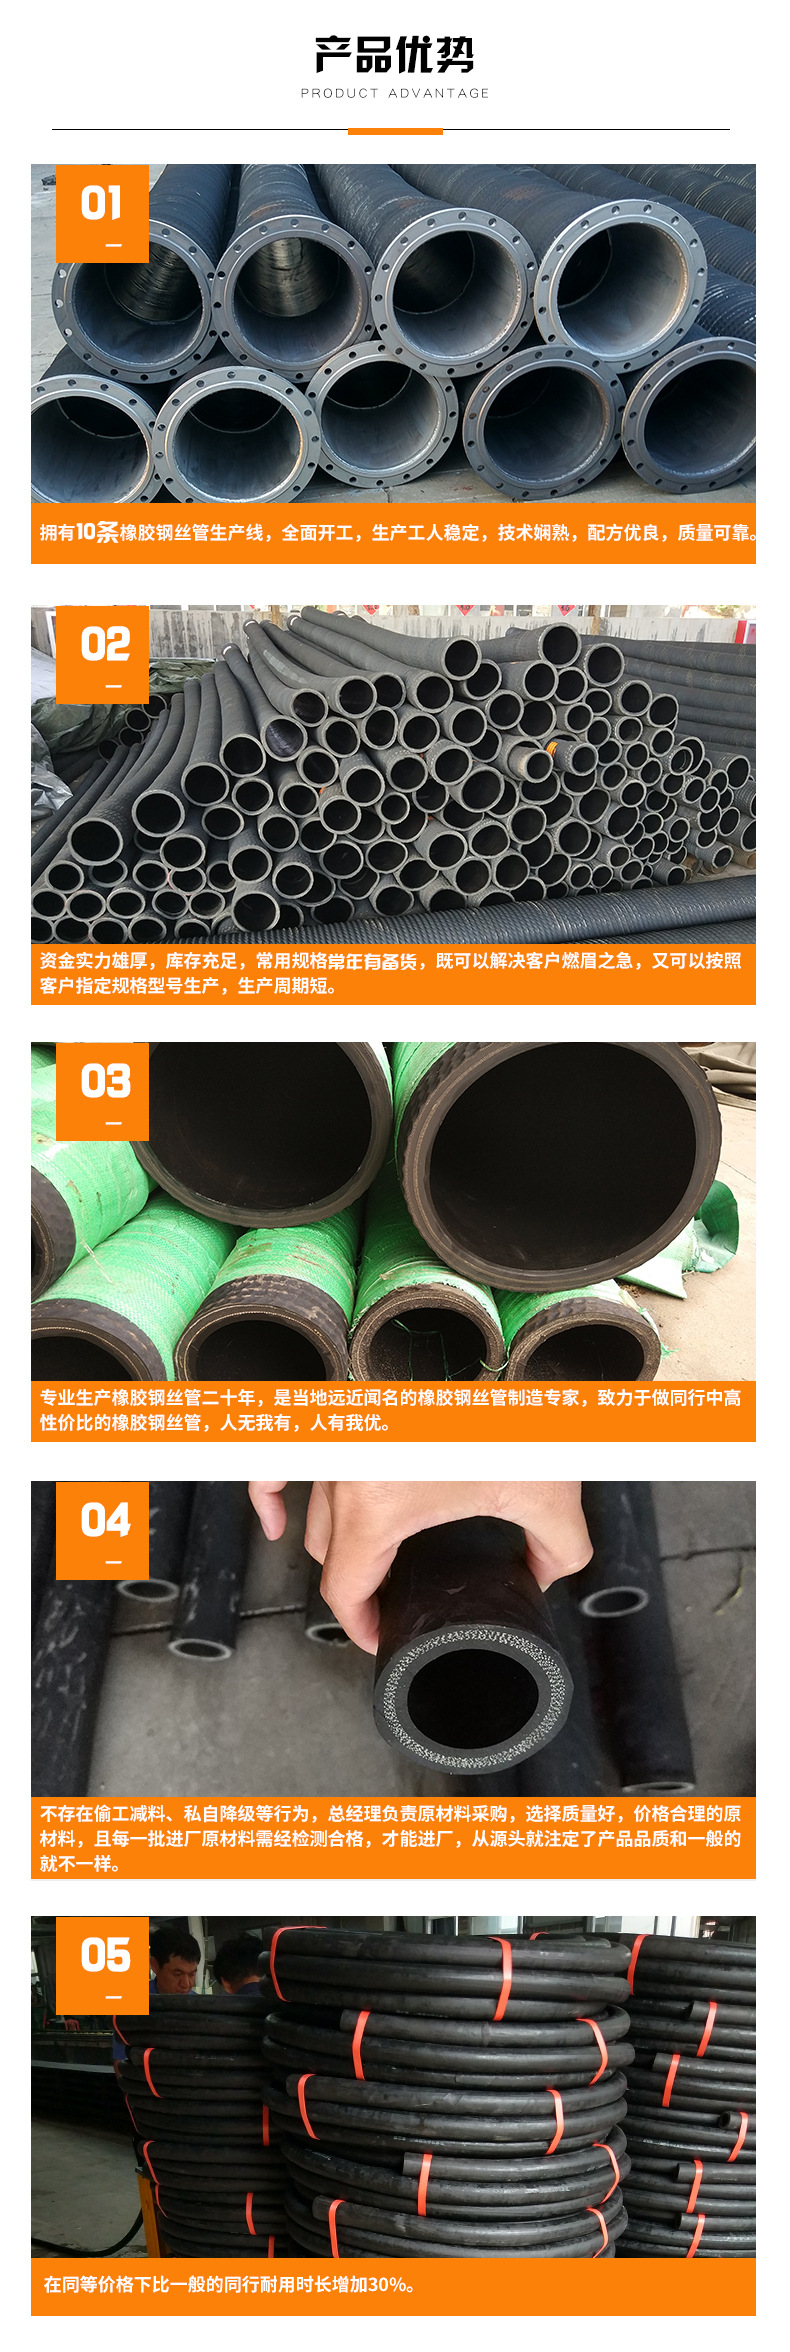 耐油胶管 输送原油 沥青 专用 耐油胶管示例图1